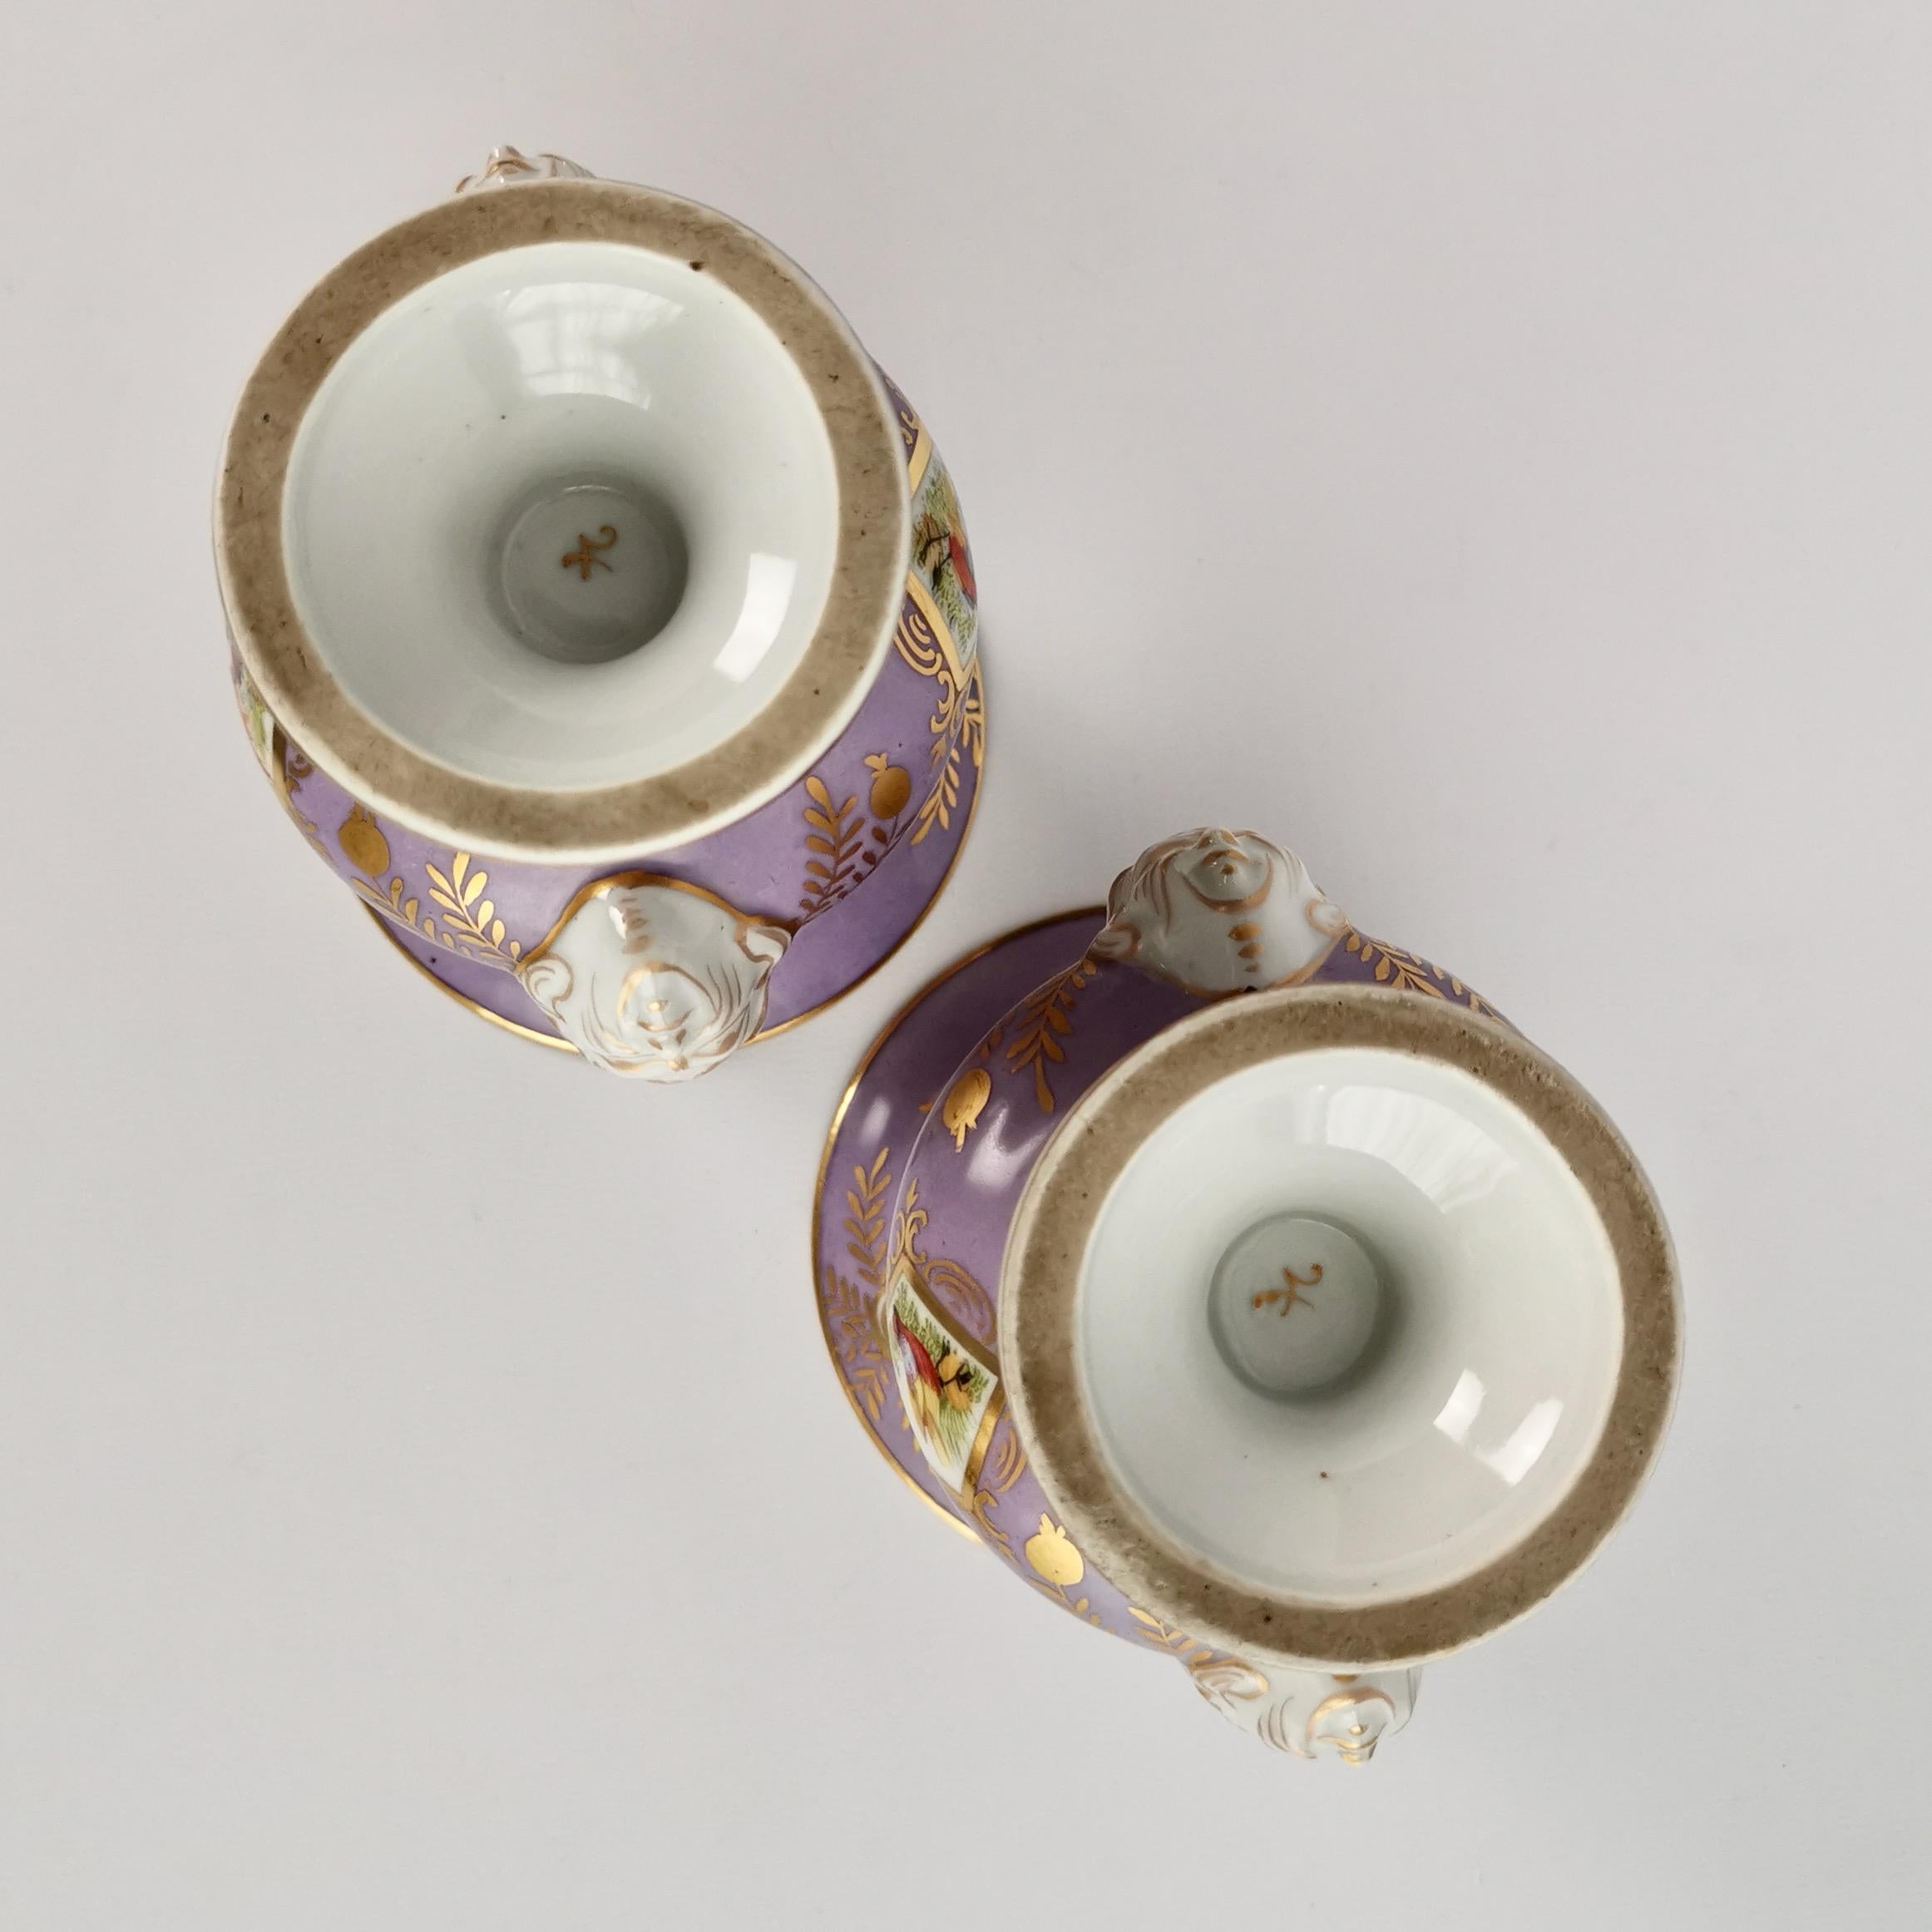 Campana-Vasen aus Porzellan, Edmé Samson zugeschrieben, Flieder, Vögel, Blumen, 19. Jahrhundert 10